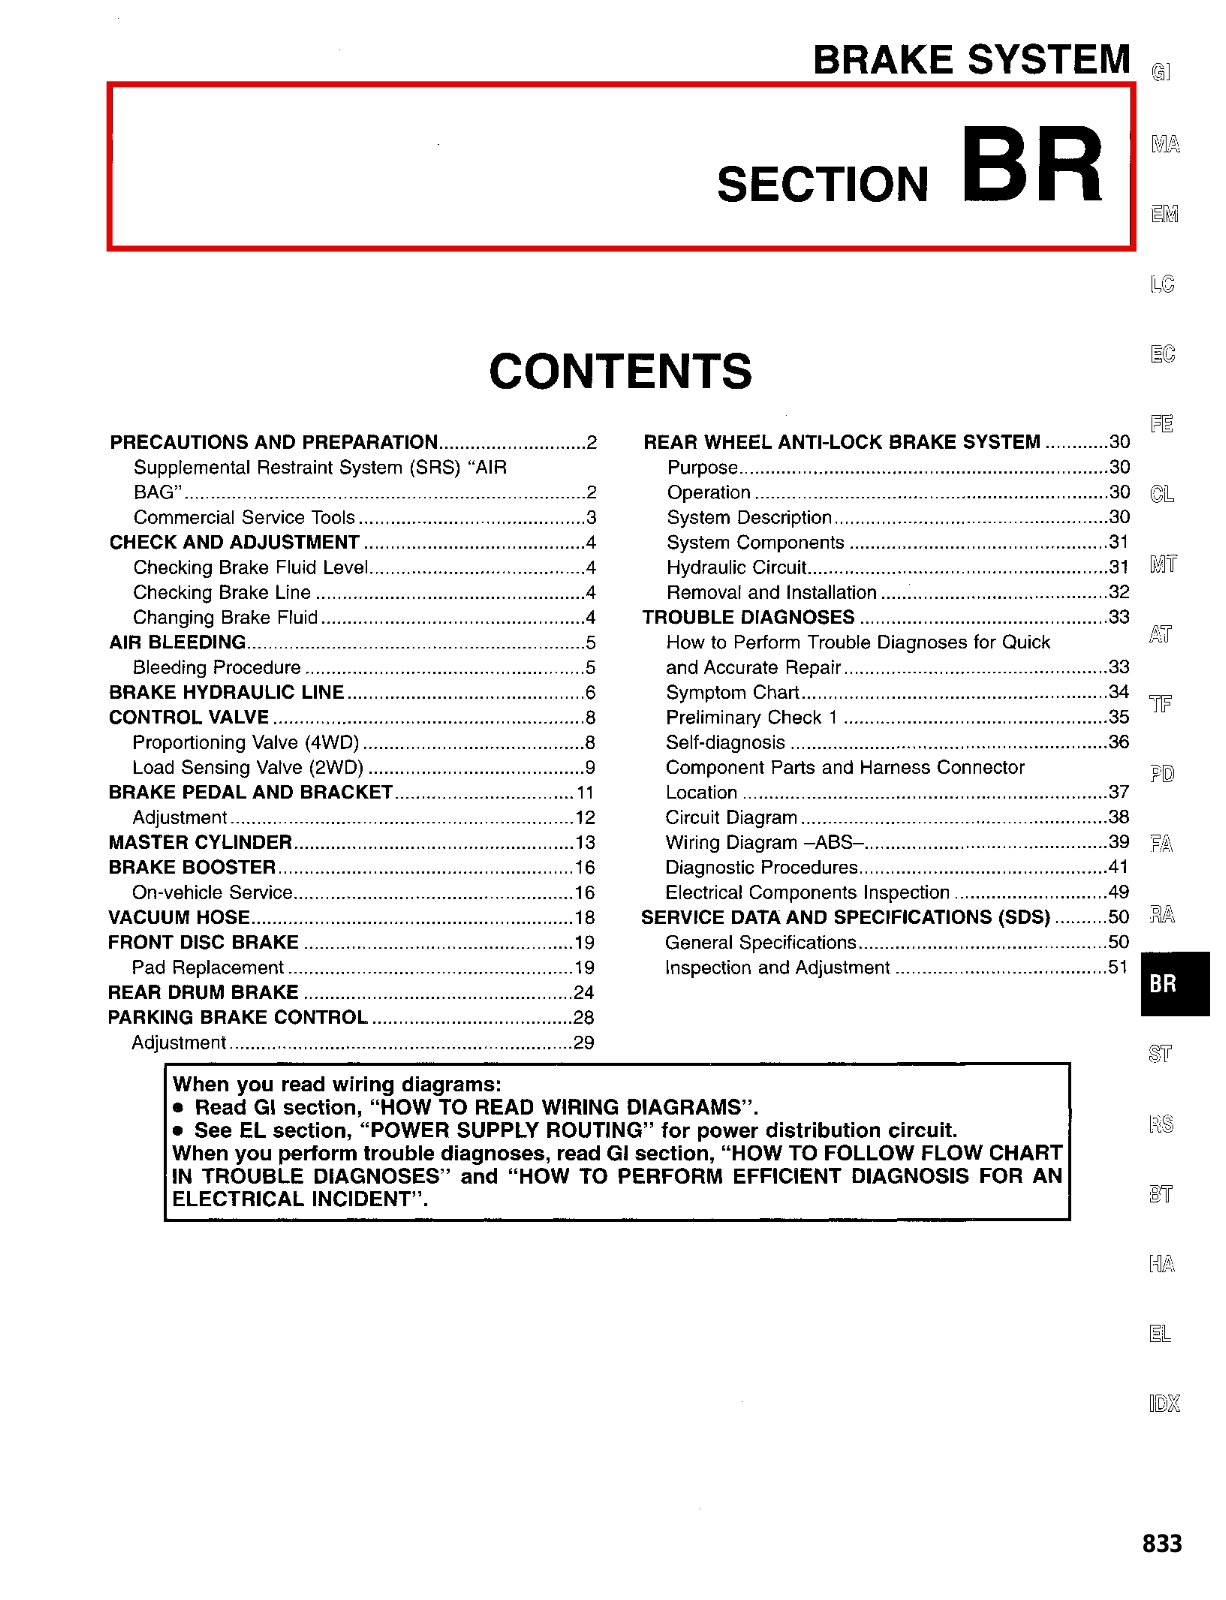 Nissan D21 Brake System Section BR 1997 Owner's Manual